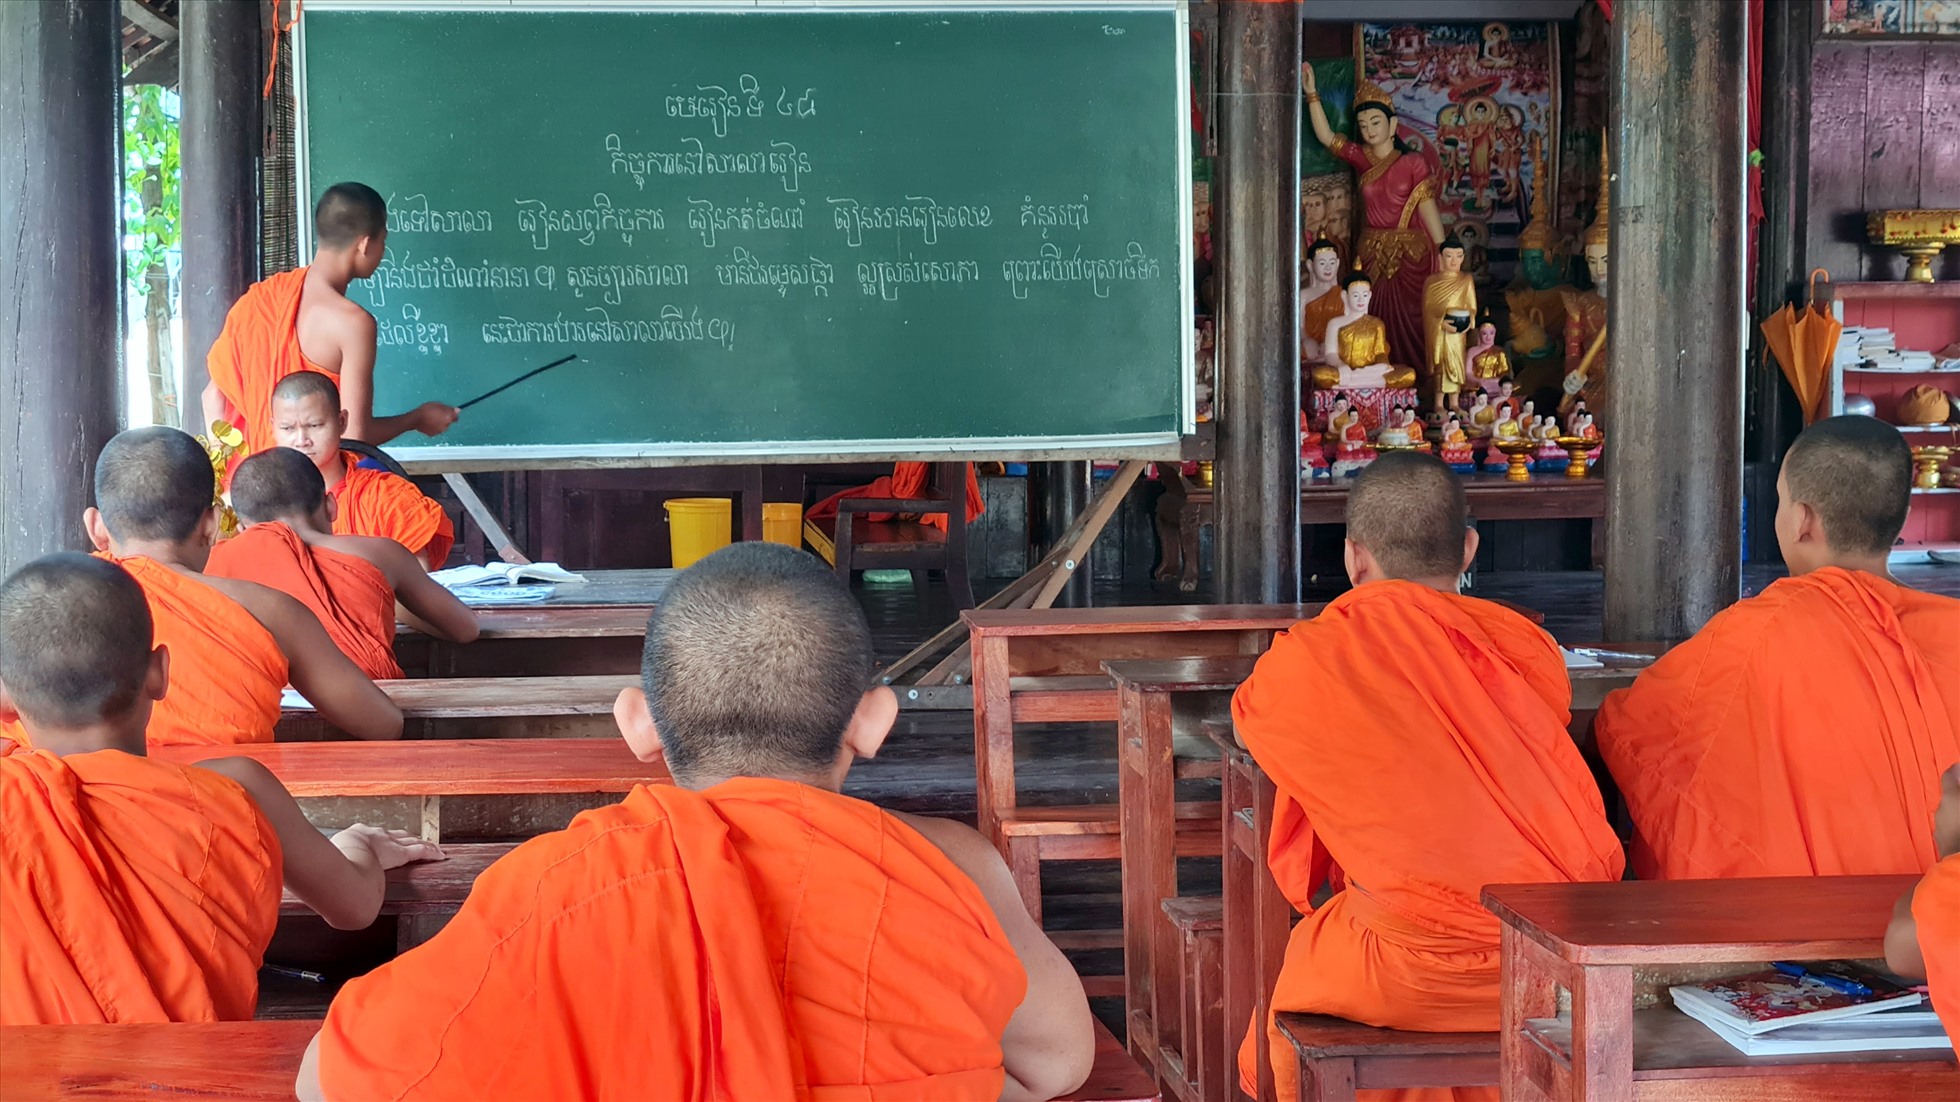 Là nơi thường xuyên dạy chữ Khmer cho đồng bào dân tộc Khmer trong vùng.